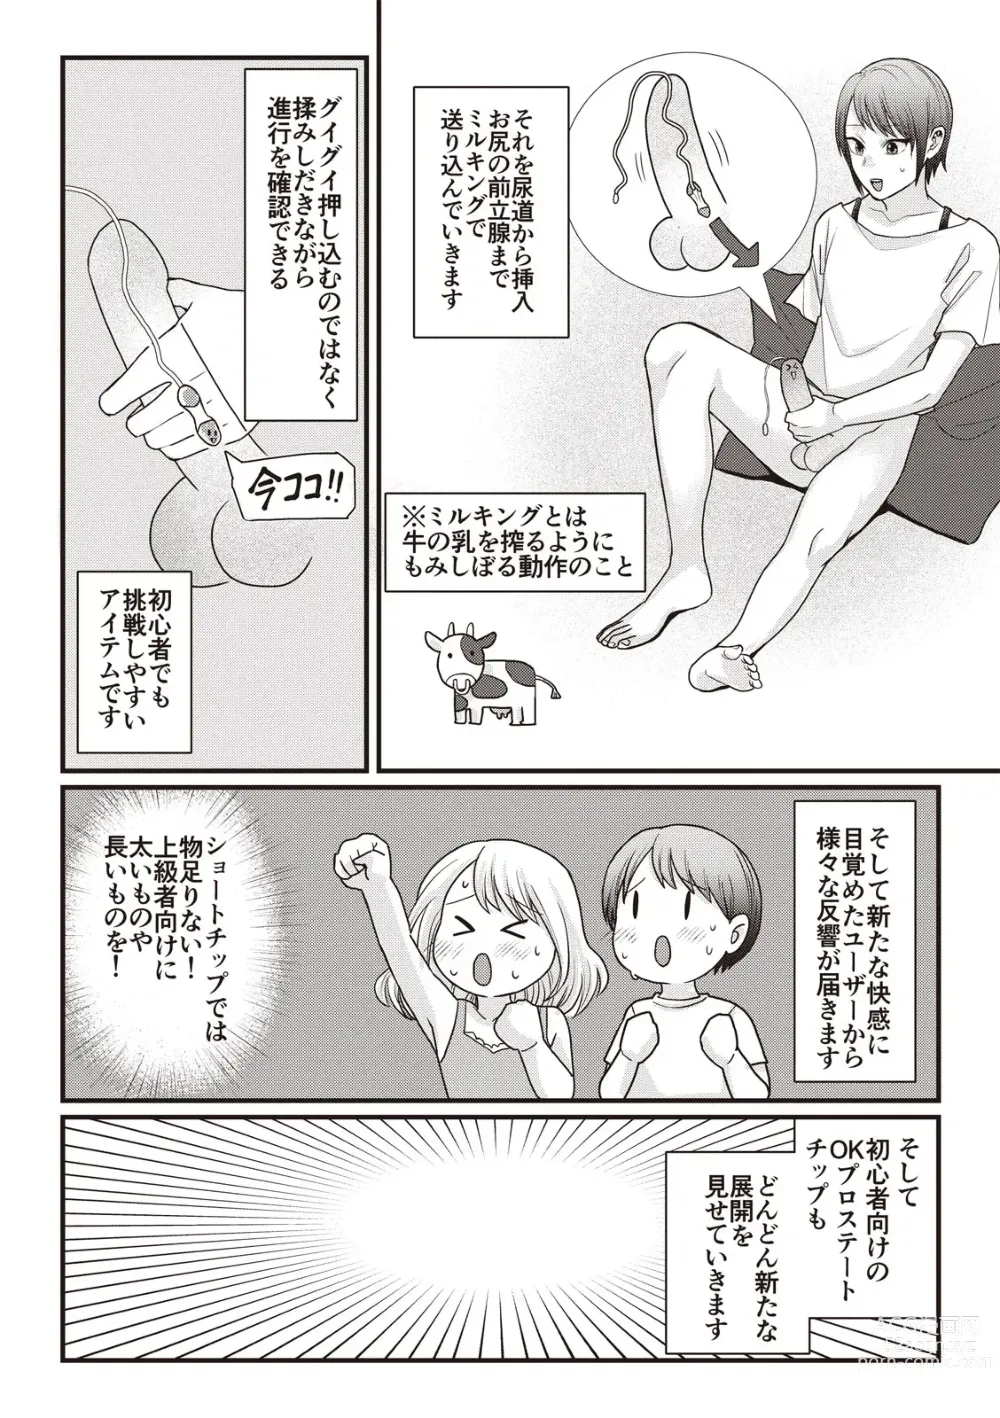 Page 118 of manga Manga de Furikaeru Otokonoko 10-nenshi